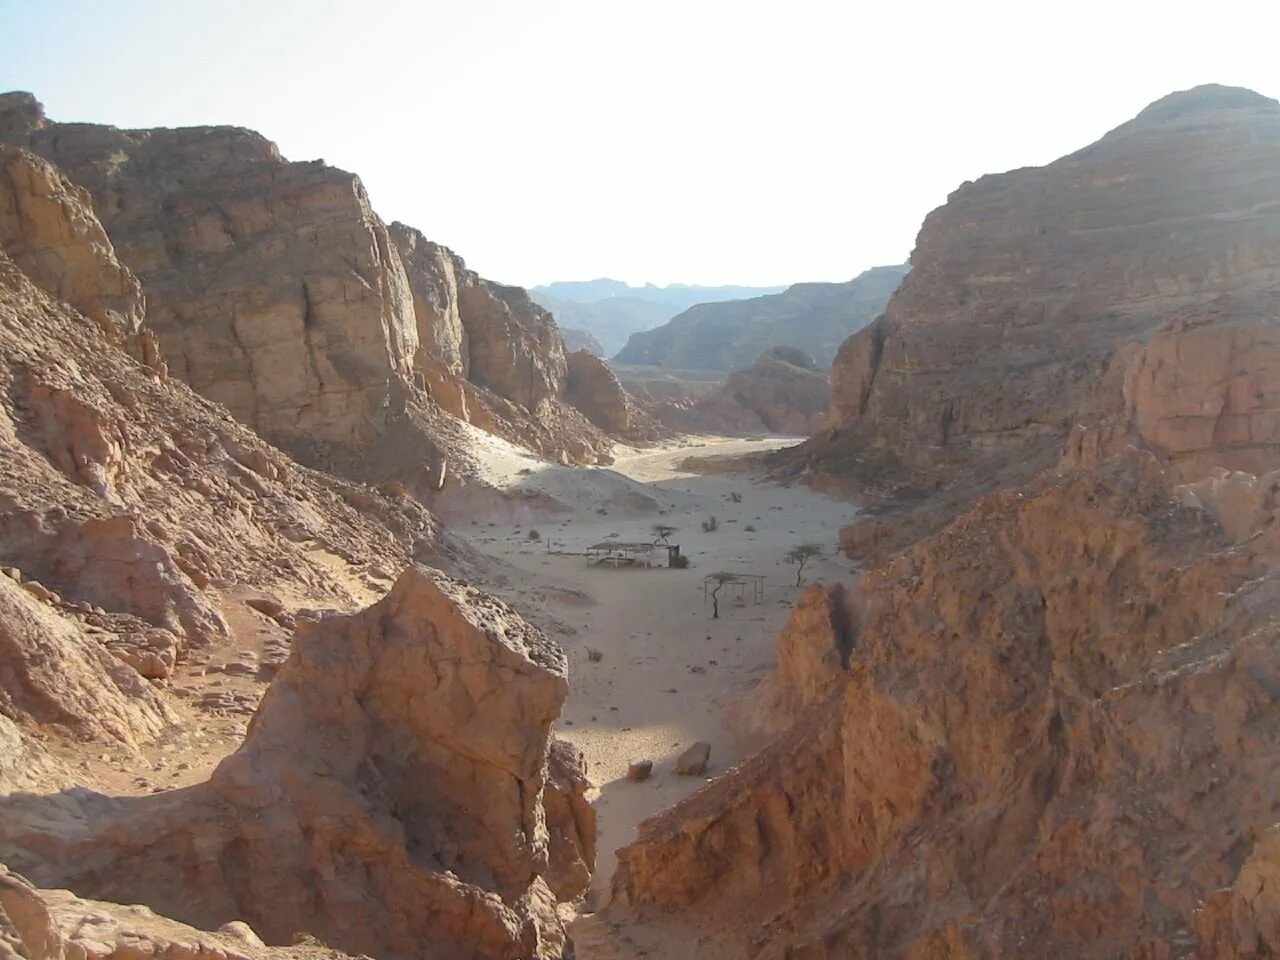 Каньон Салама Египет. Красный каньон Египет Синай. Цветной каньон Нувейба. Нувейба Египет цветной каньон. Каньон шарм эль шейх